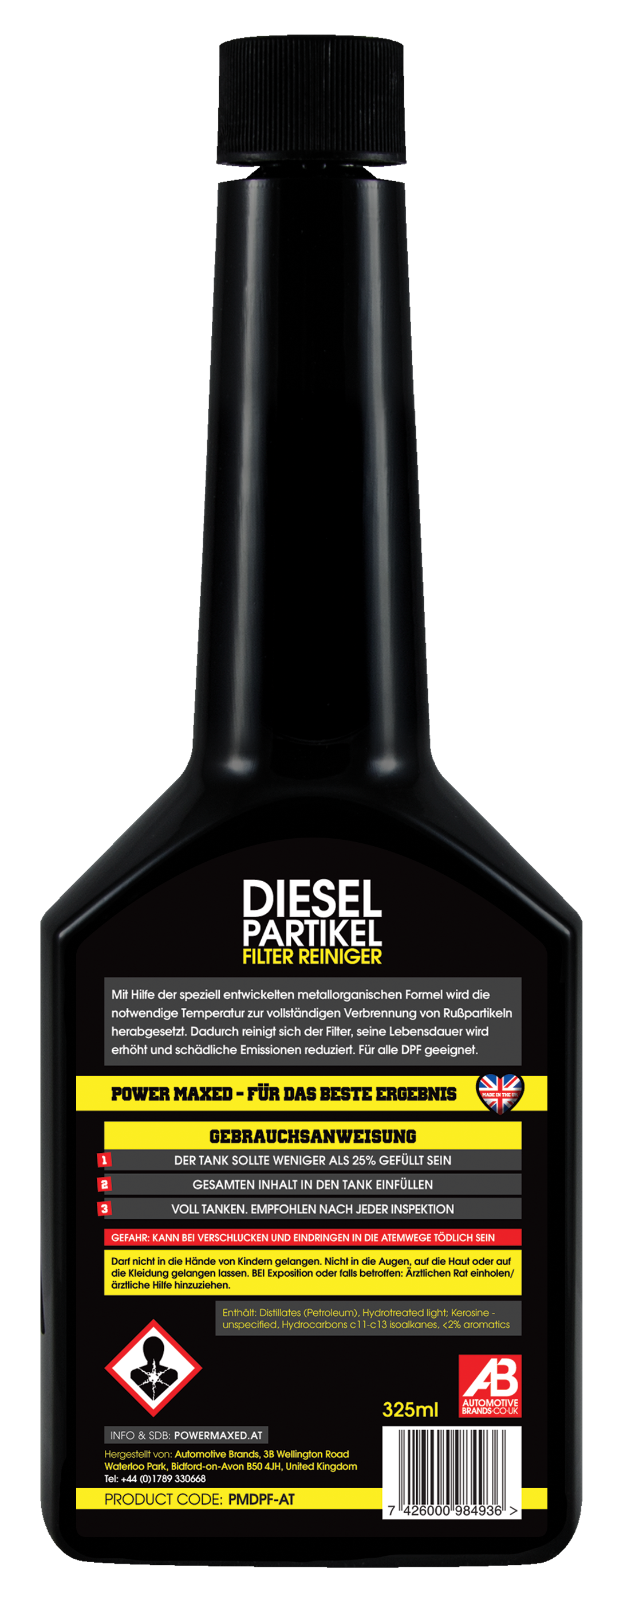 powermaxed-diesel-partikelfilter-reiniger-flasche-hinten